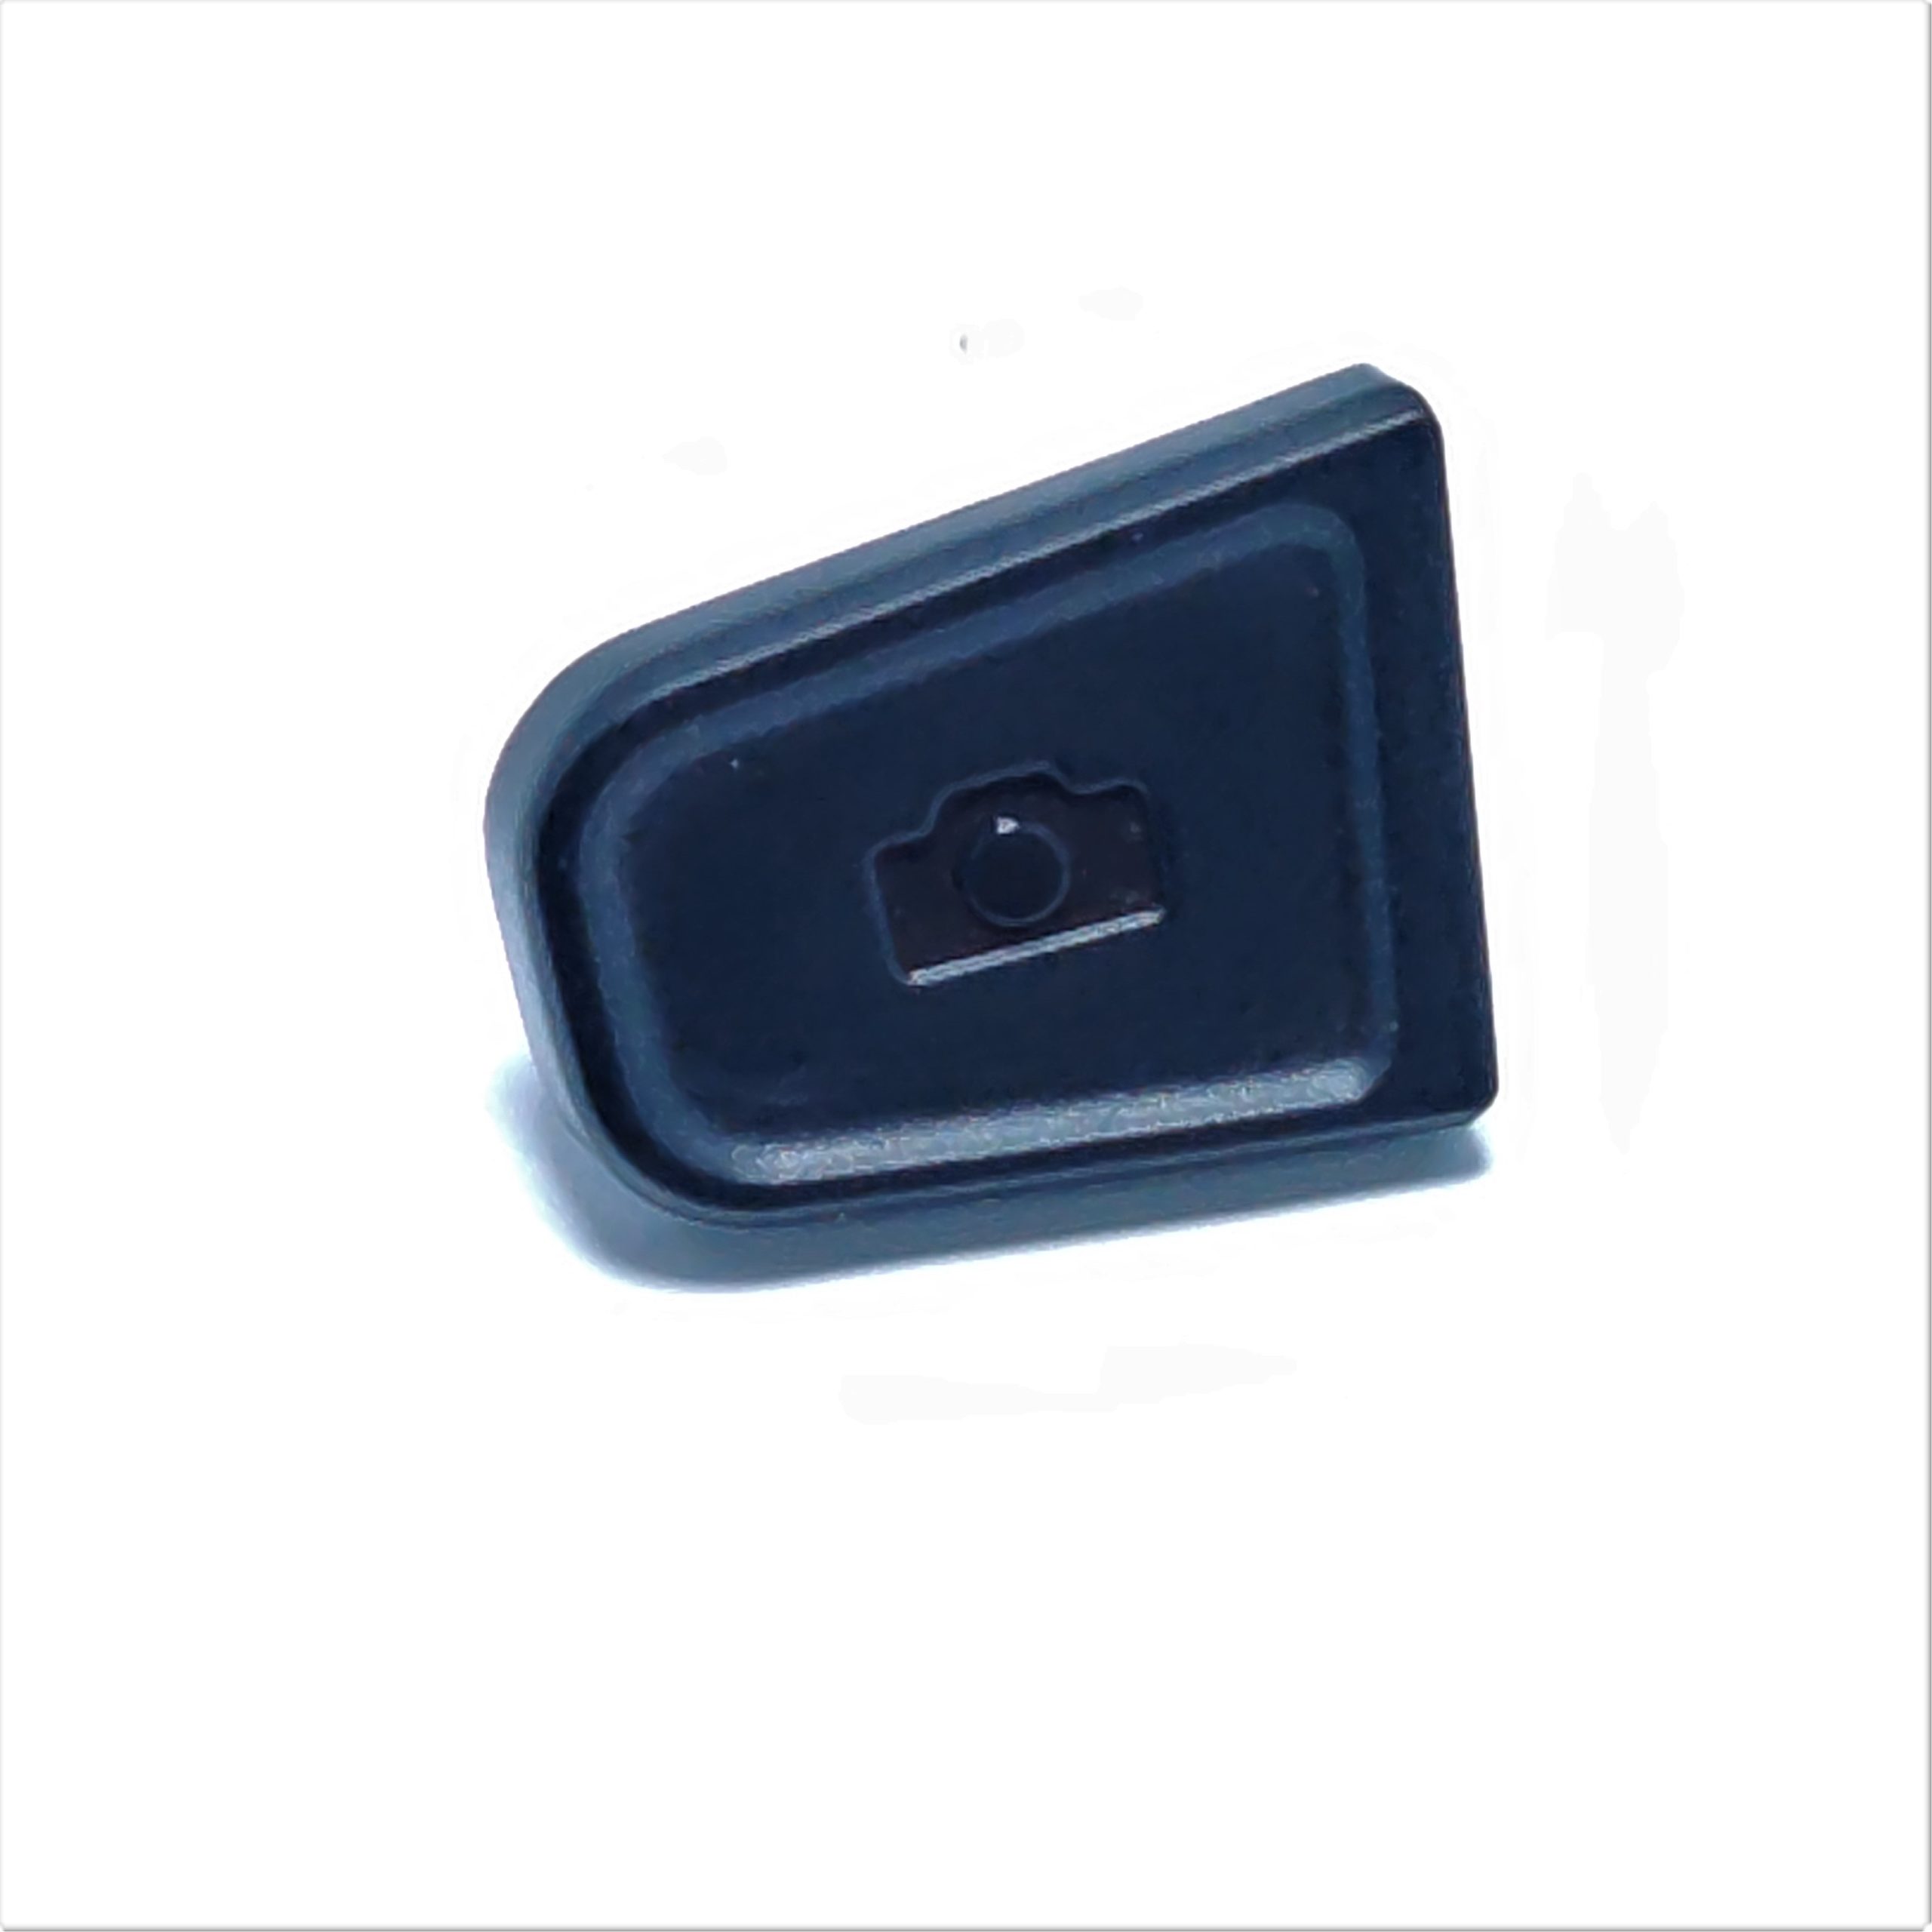 Ricambi Controller Mavic Mini - Tasto Controller Mavic Mini - Shutter Key  - Record Key  - Spare parts Controller Mavic Mini